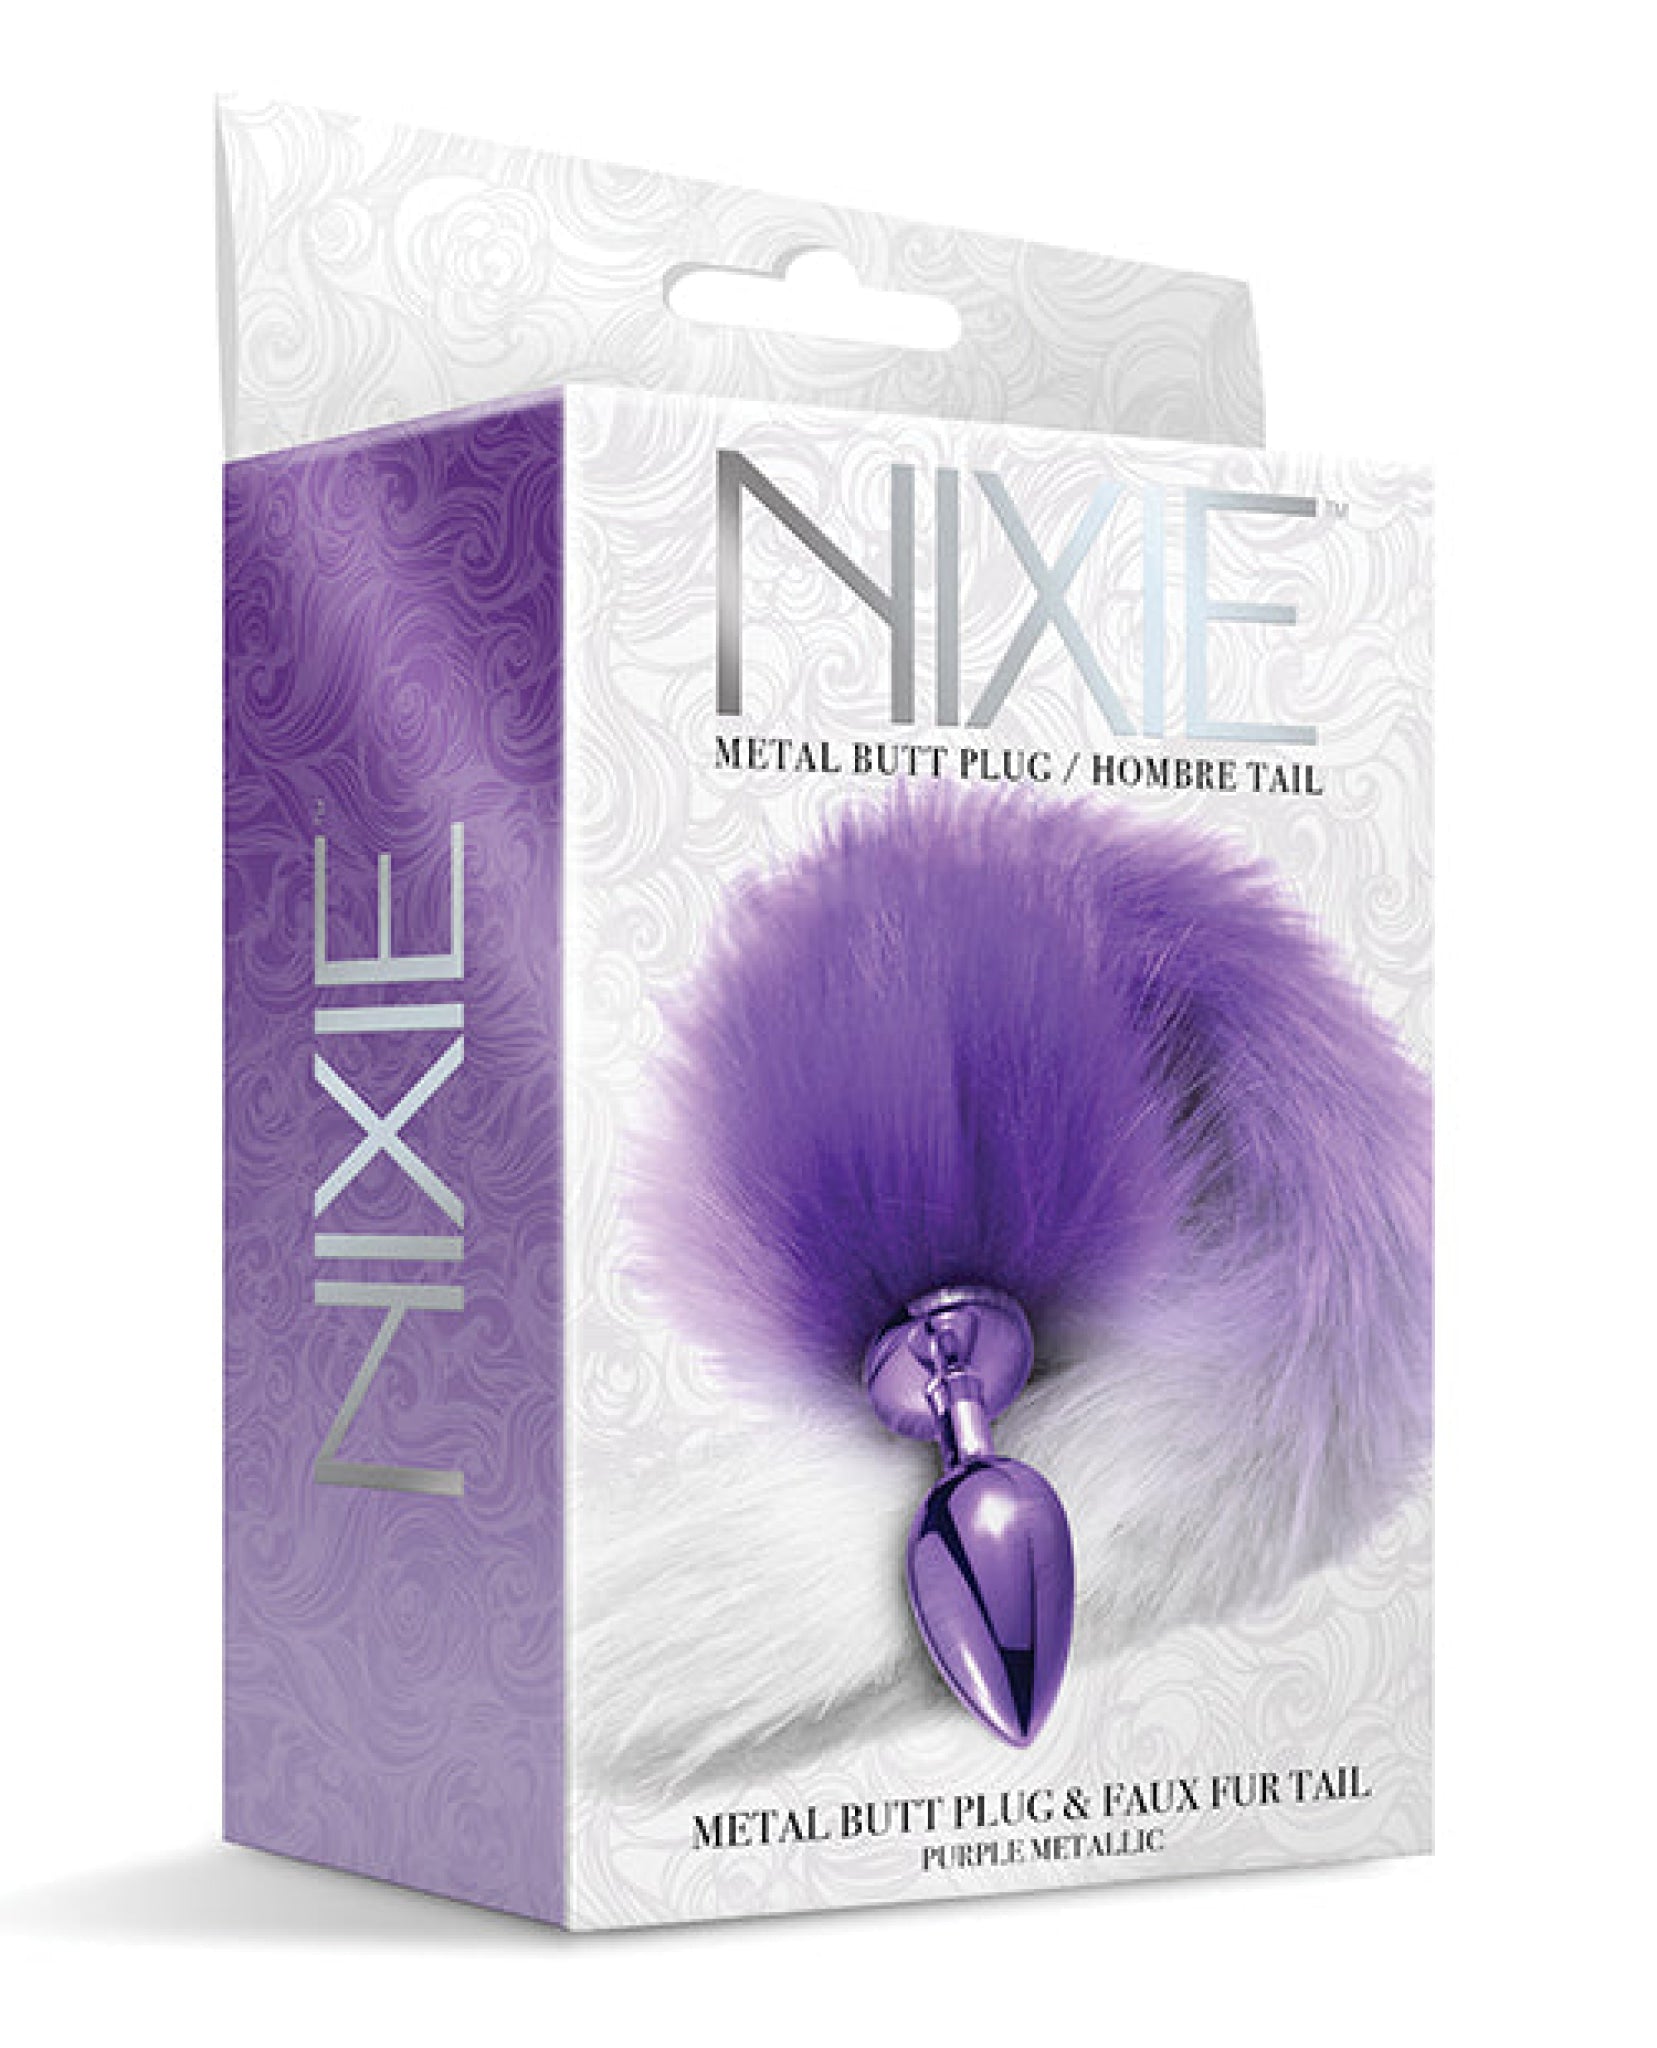 Nixie Metal Butt Plug W/faux Fur Tail Nixie